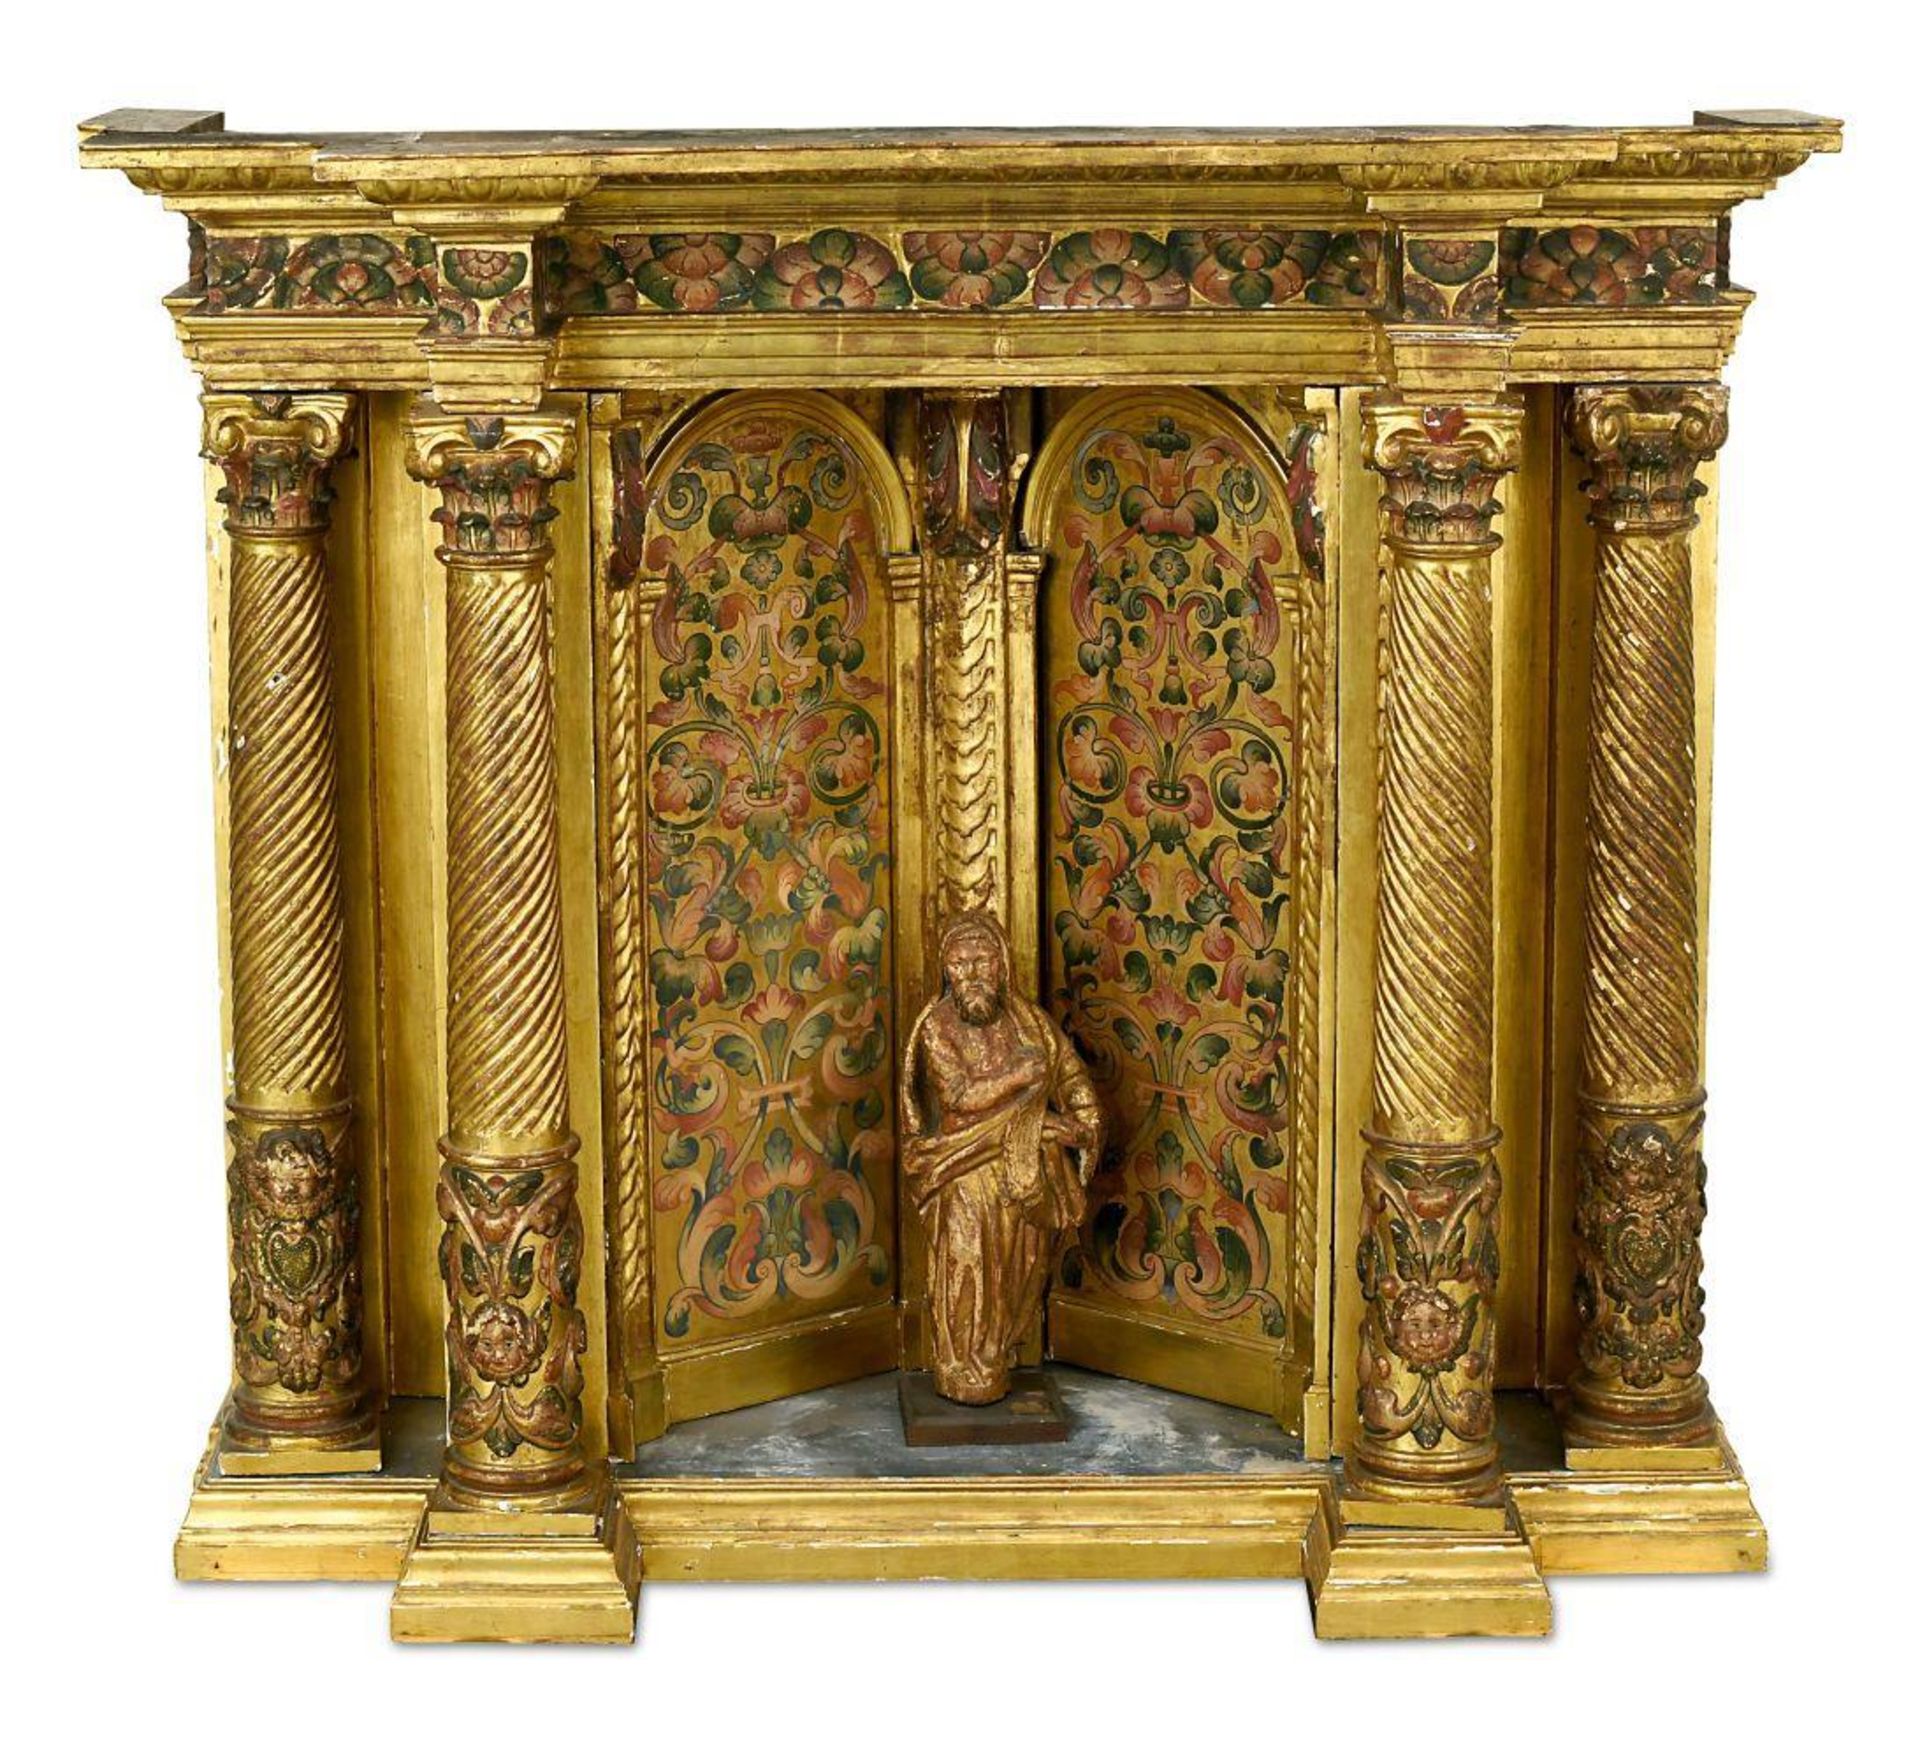 Altaraufsatz. 19. Jh. | Holz, goldfarben gefasst, tlw. farbig bemalt.